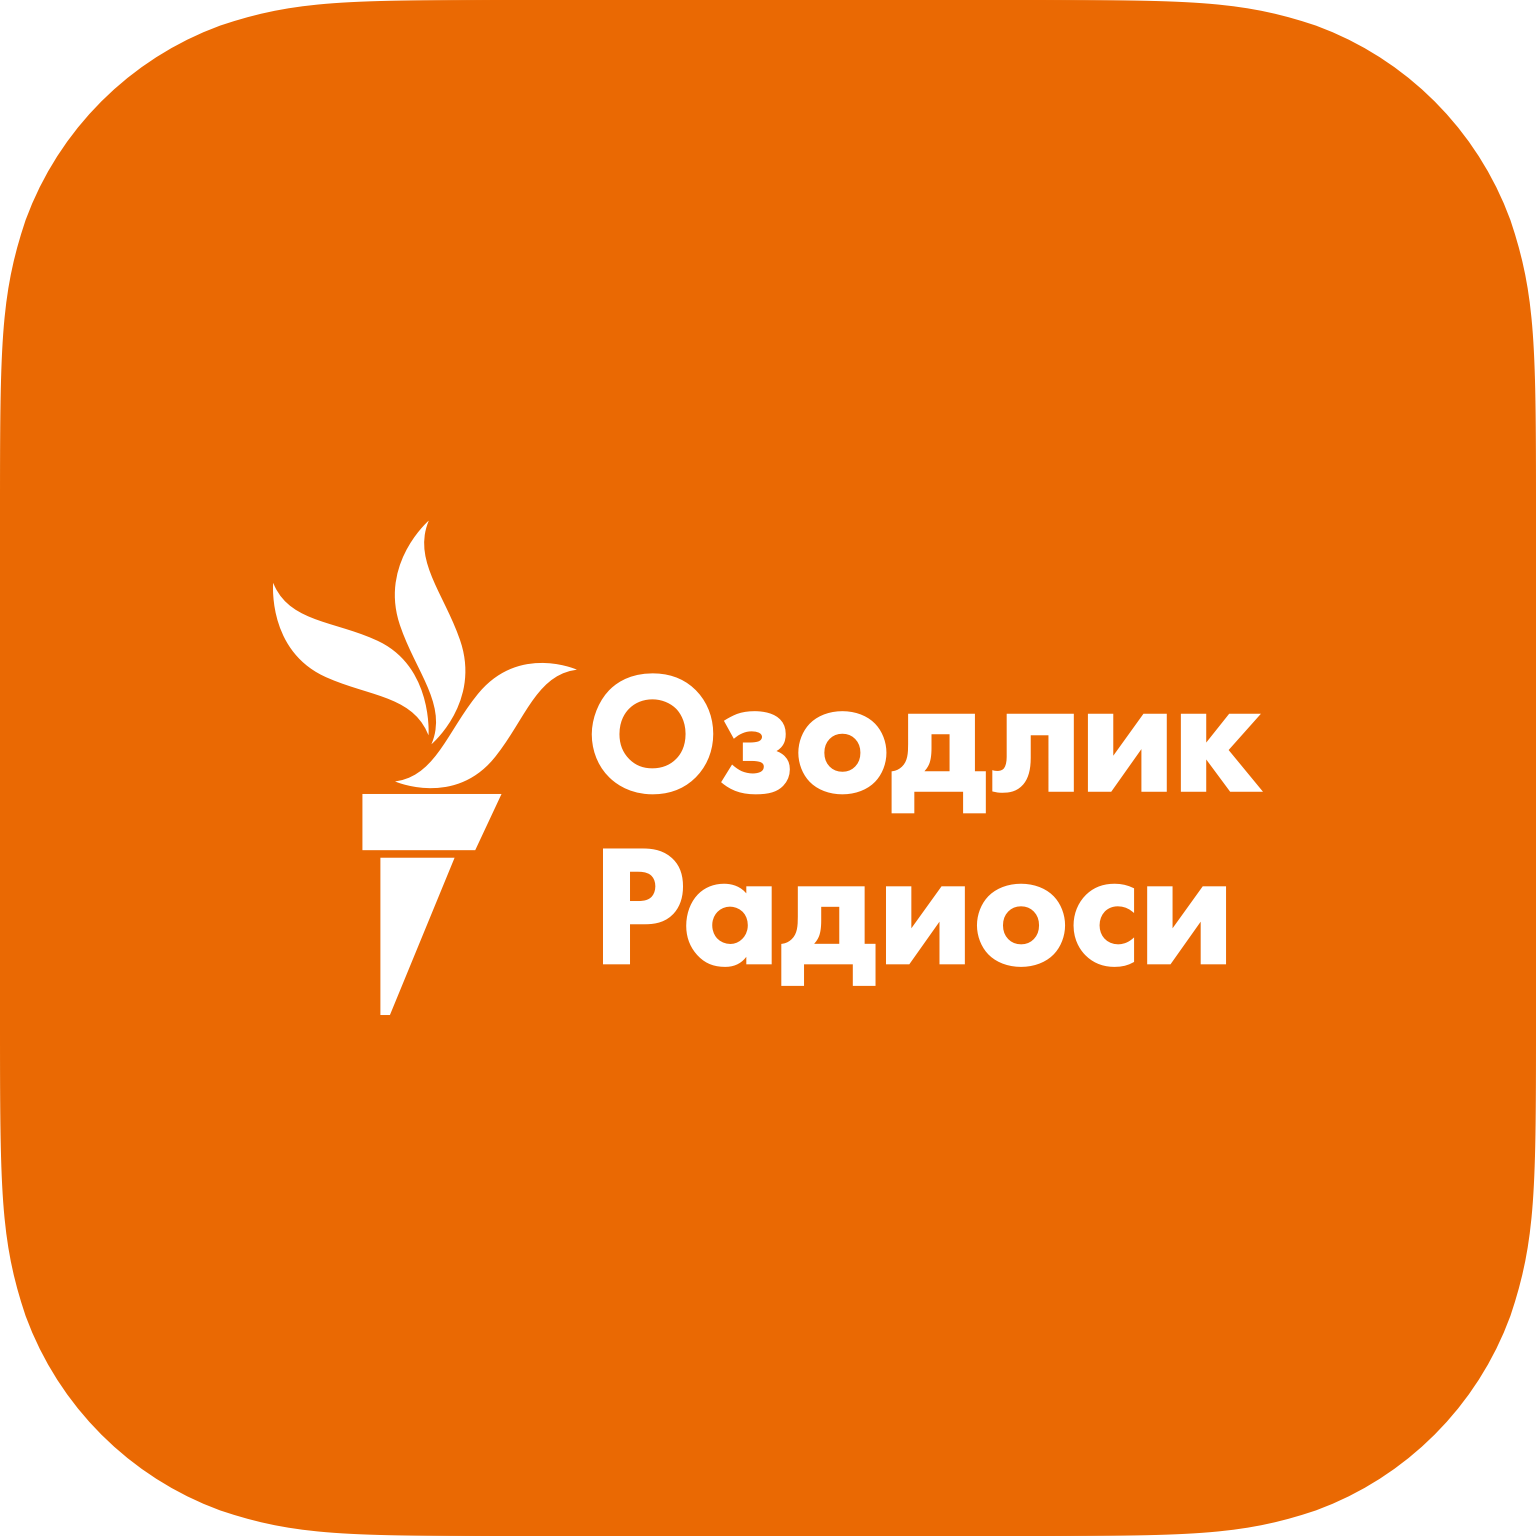 ЛГБТ-сообщество обратилось к президенту Мирзияеву с просьбой убрать из  Уголовного кодекса статью за «мужеложство»